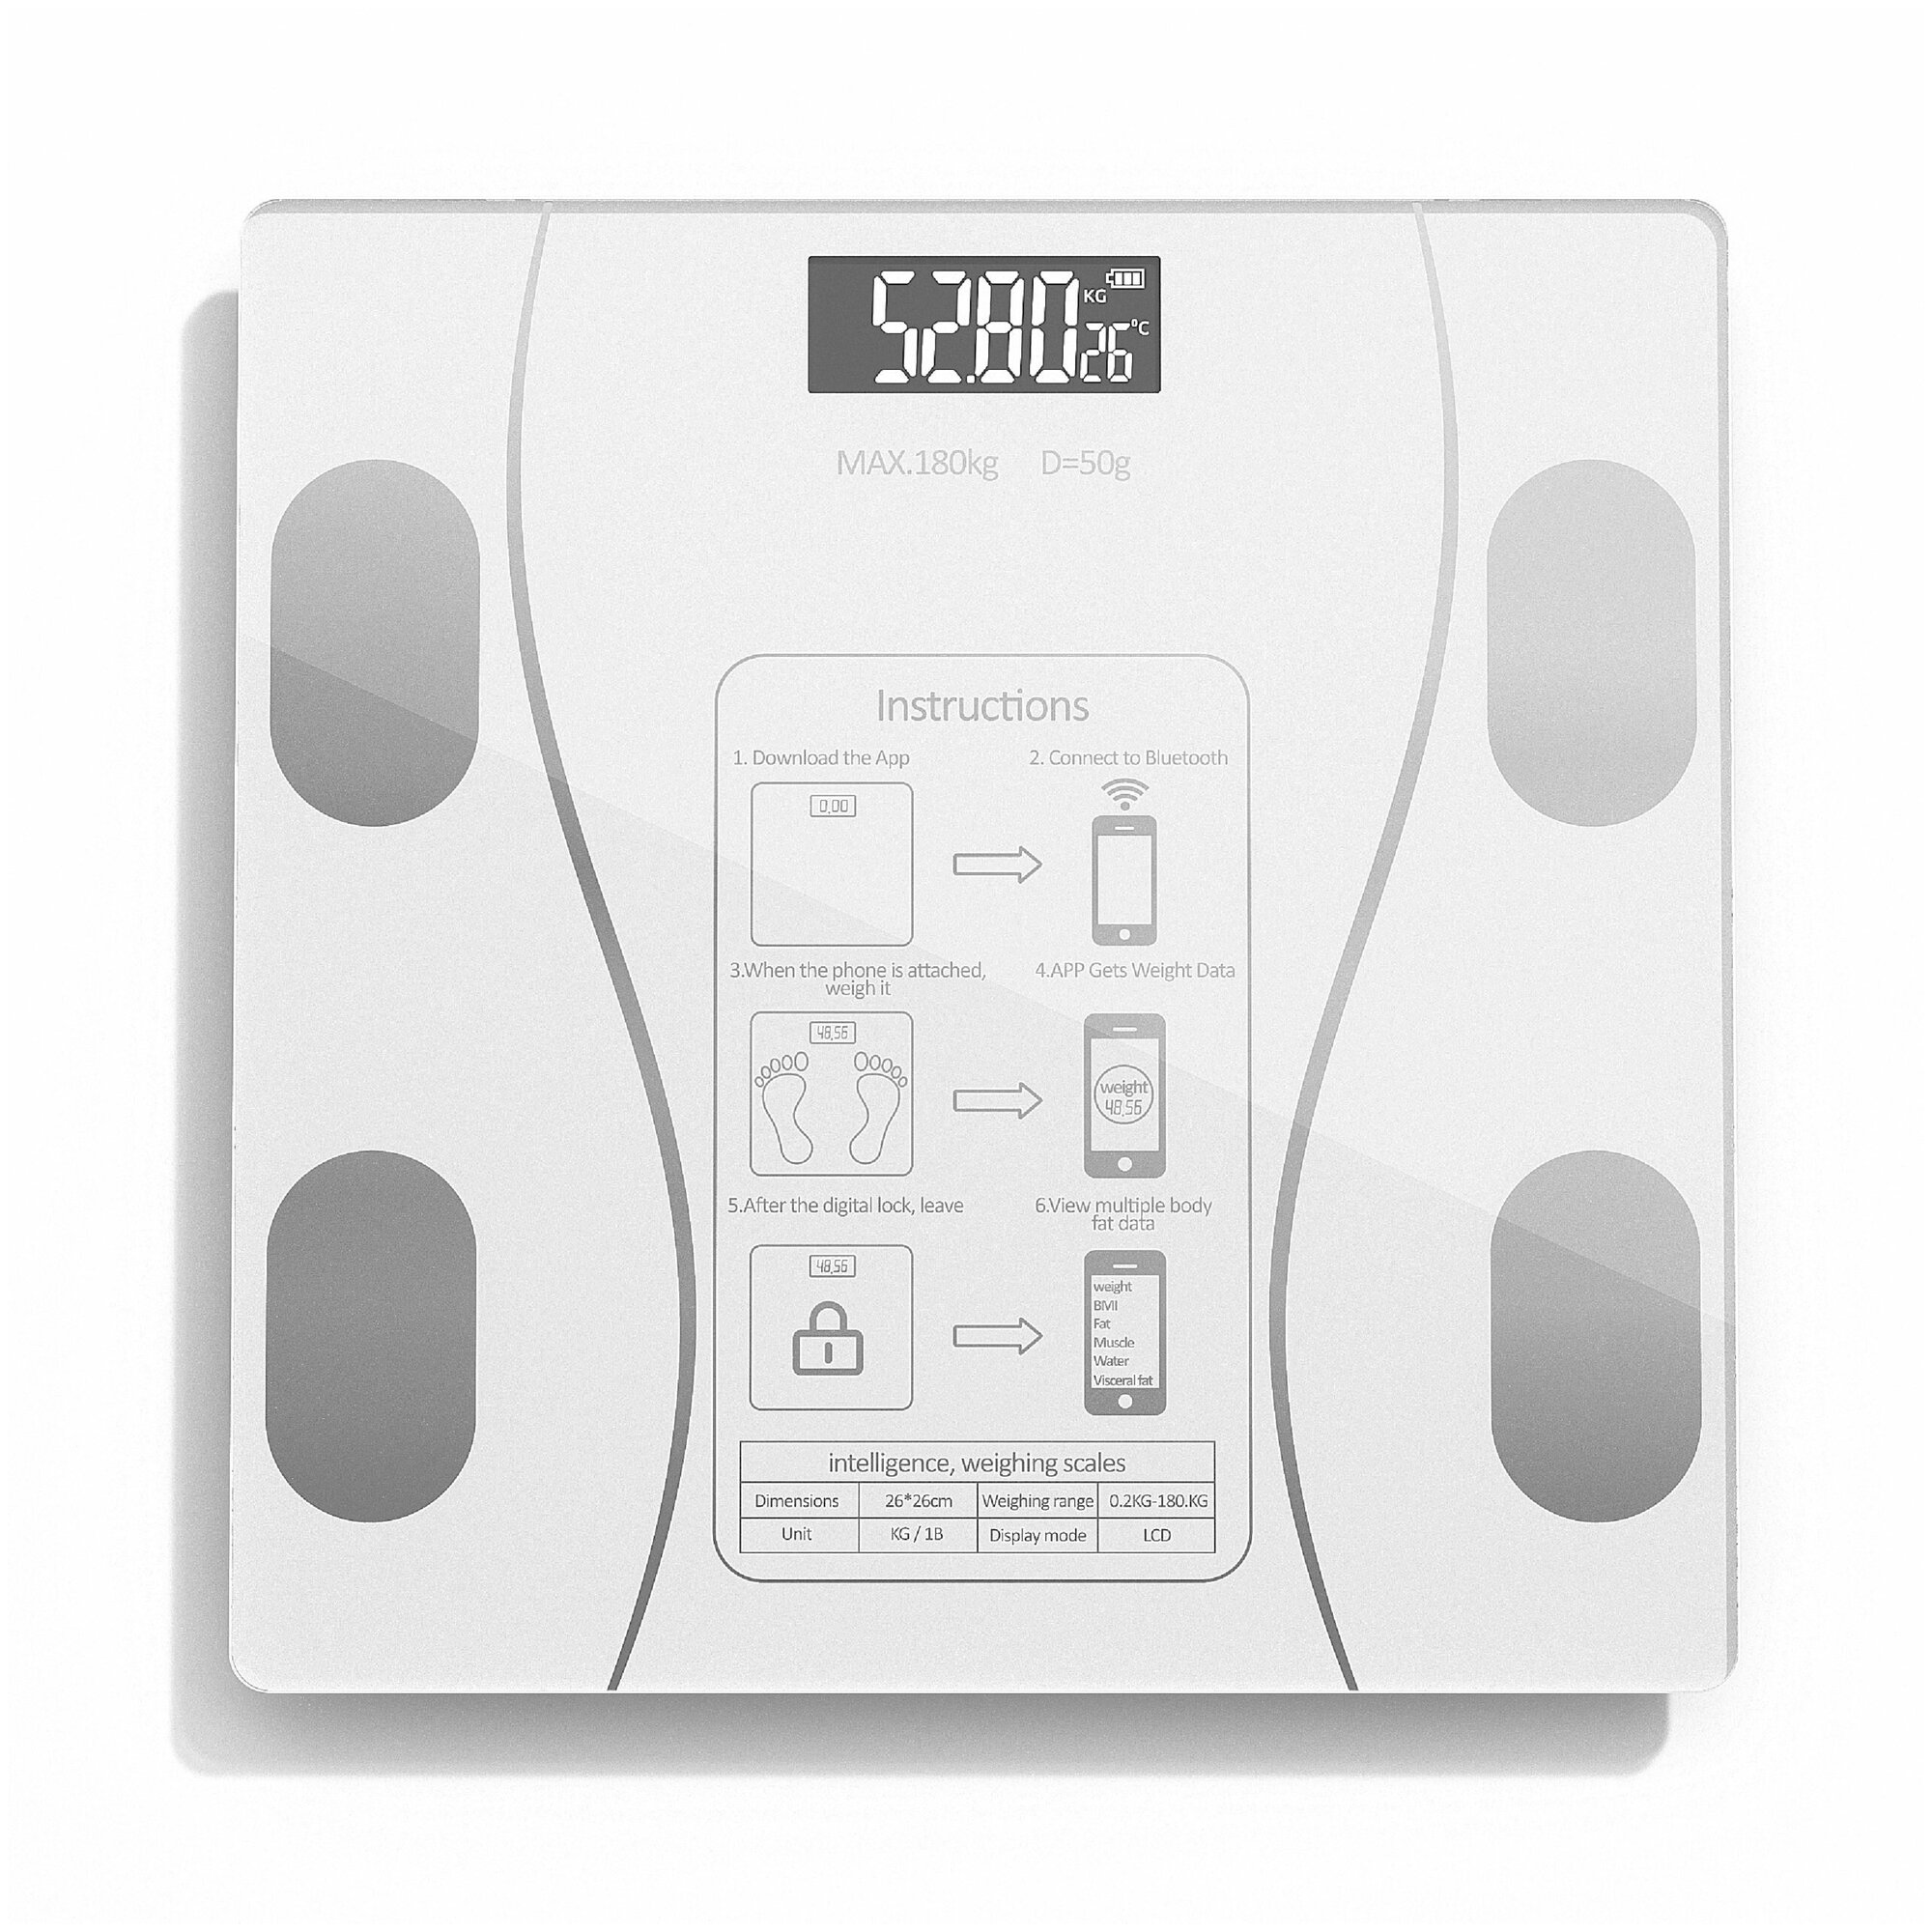 Напольные умные весы c bmi, электронные напольные весы для Xiaomi, iPhone, Android, белые - фотография № 1